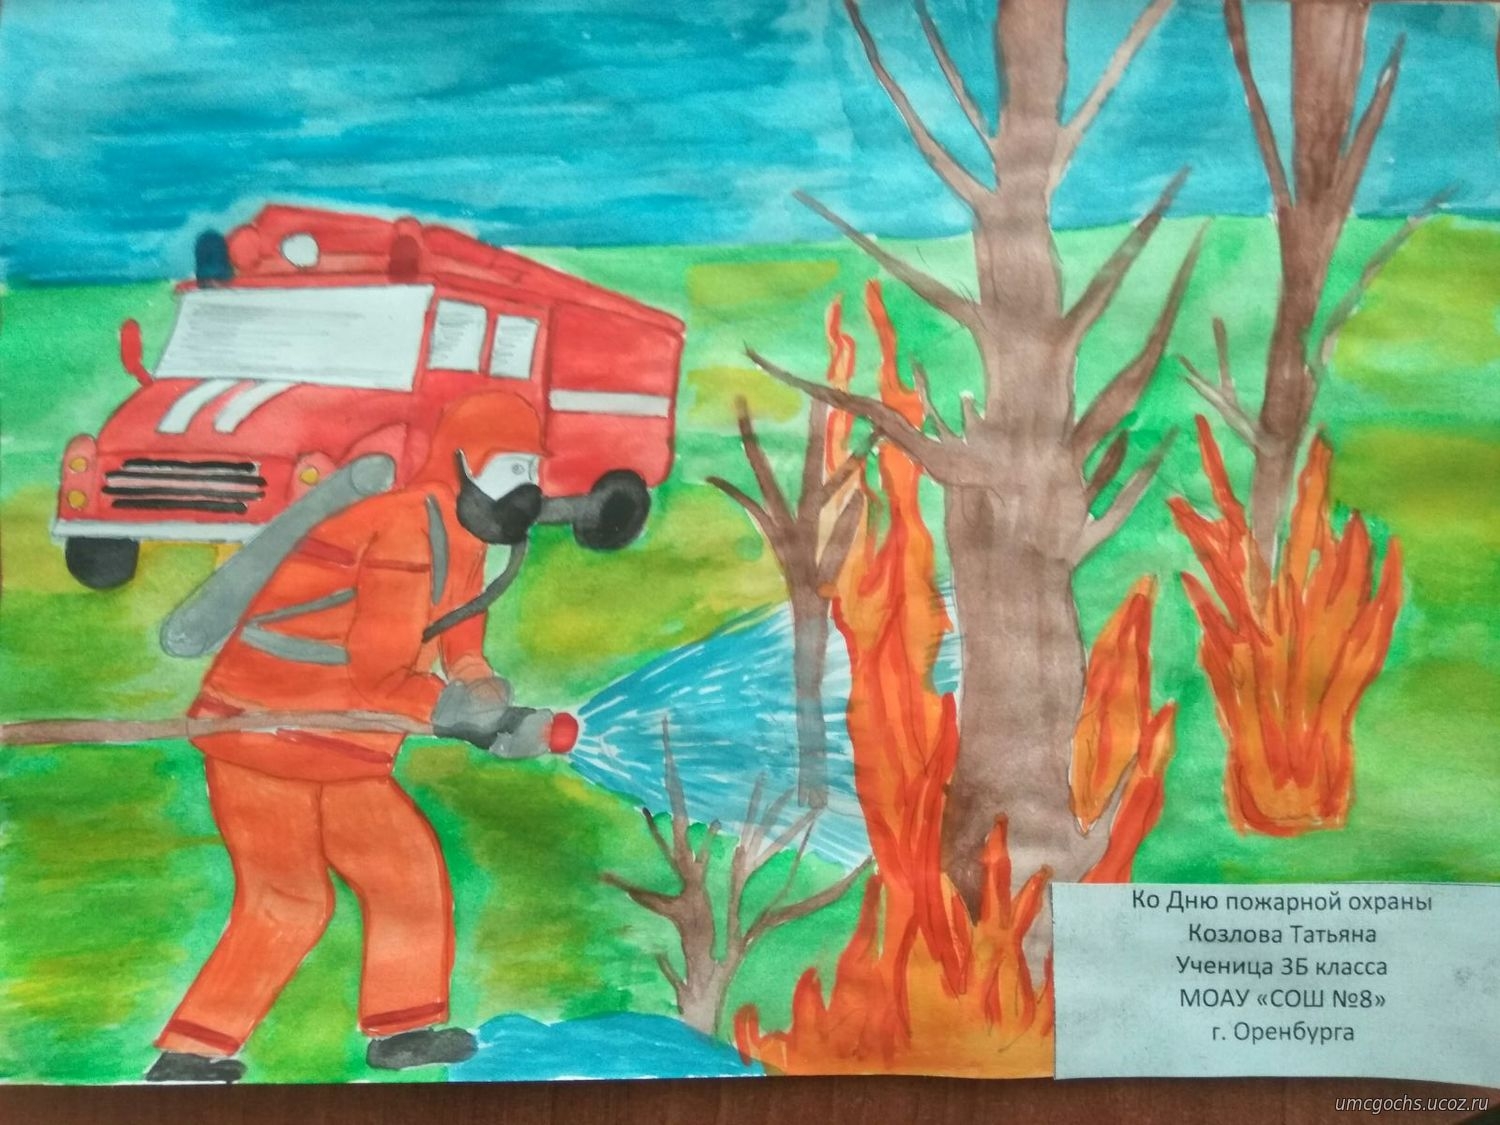 Рисунок на тему пожарная охрана. Рисунок на пожарную тему. Рисунок пожарная безопасность. Рисунок на тему пожар. Рисунок ко Дню пожарной охраны.